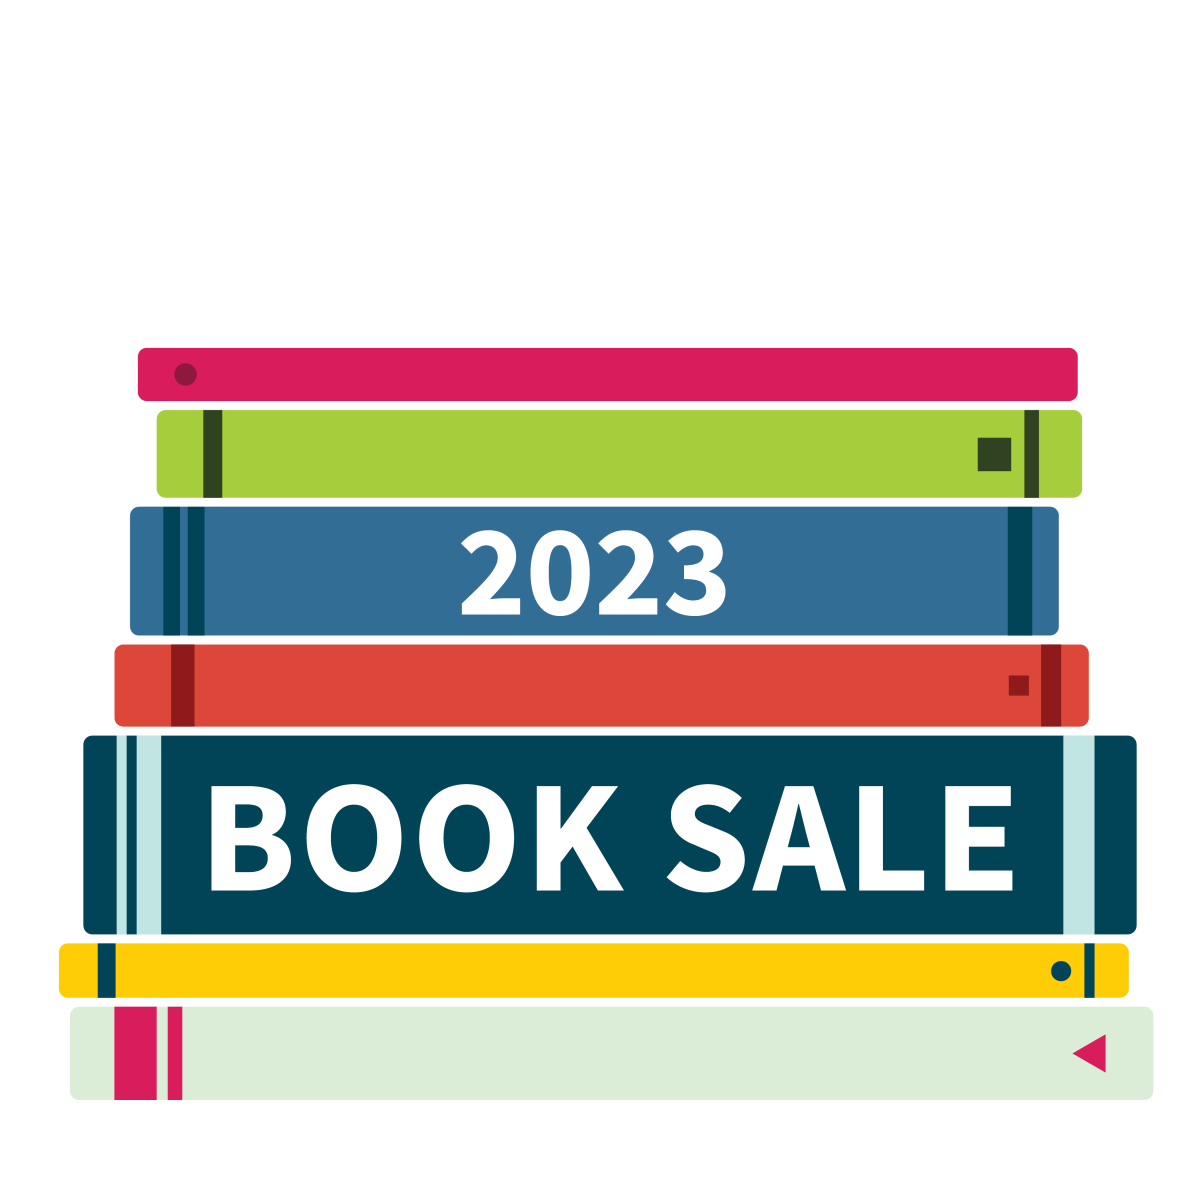 2023 MLA Book Sale April 28-30